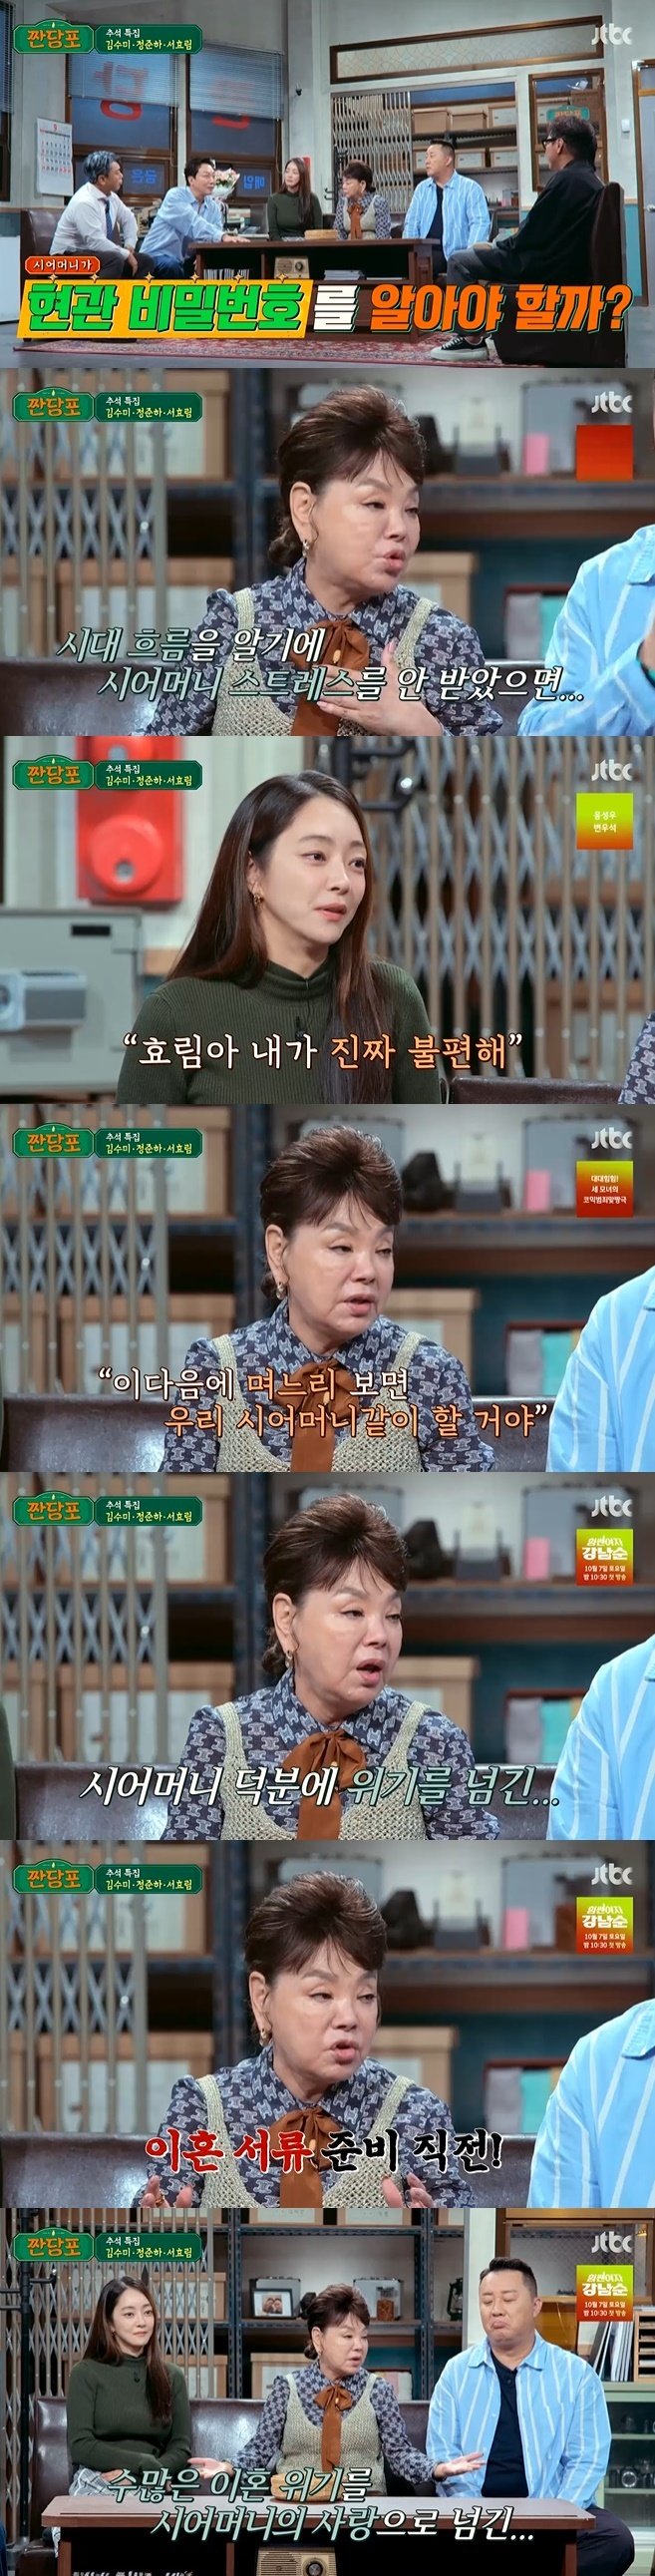 '김수미 며느리' 서효림, 쿨한 시어머니 자랑…"집주소도 몰라" [RE:TV]